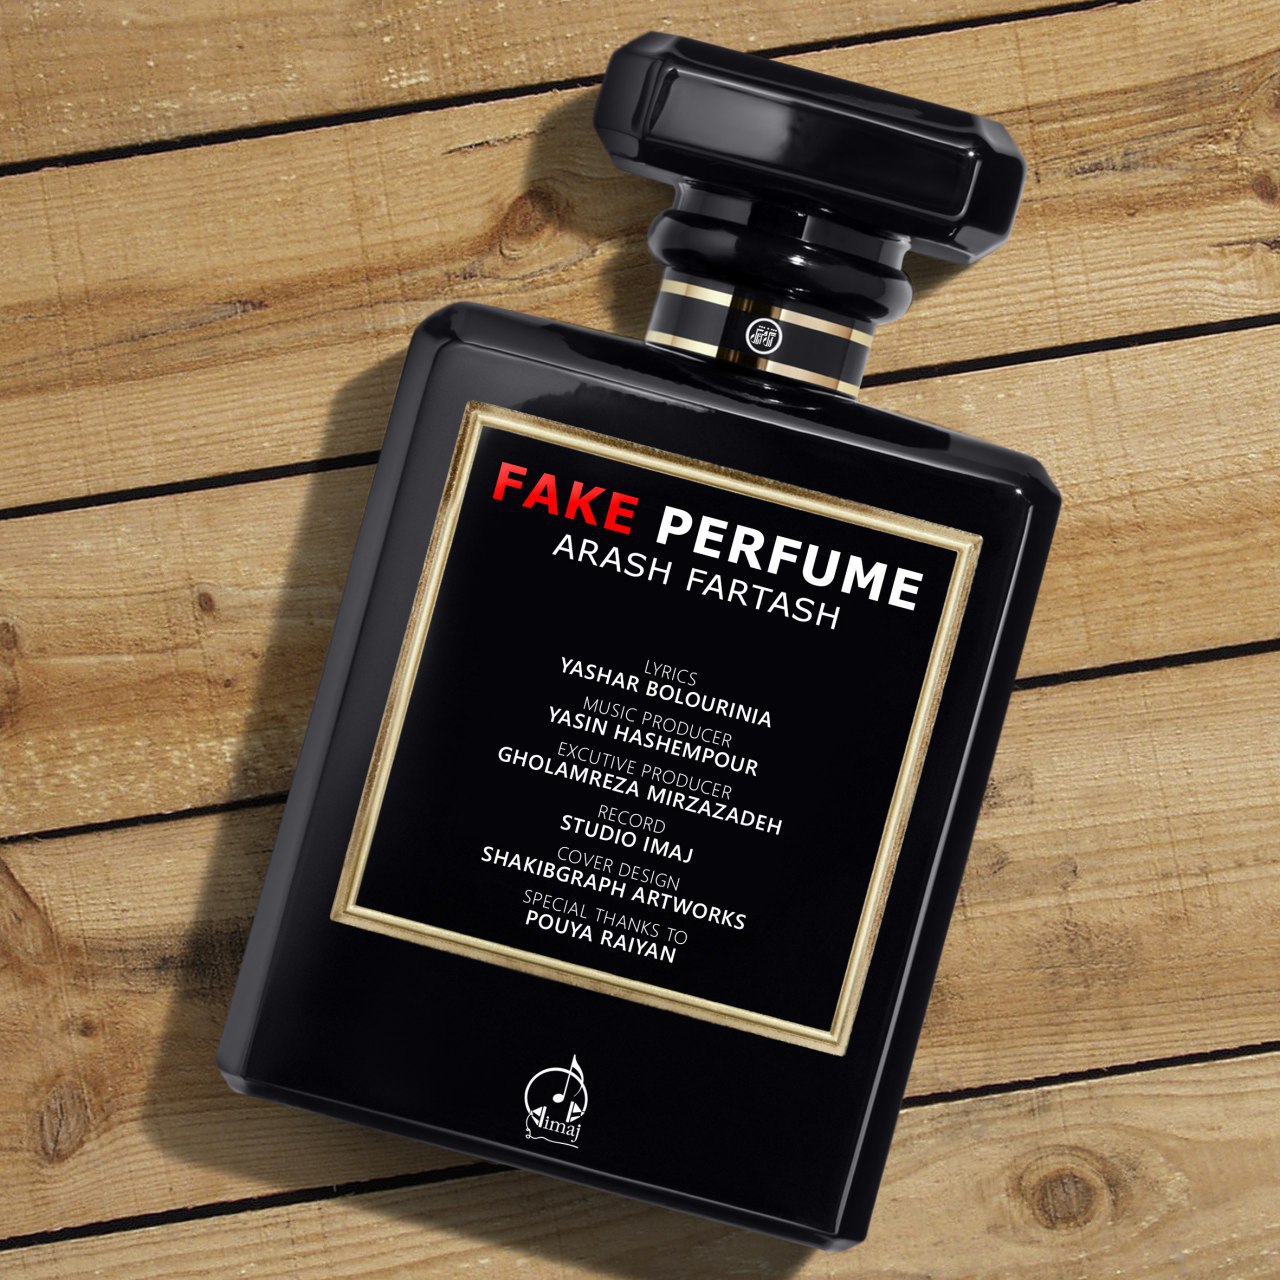 Arash Fartash – Fake Perfume